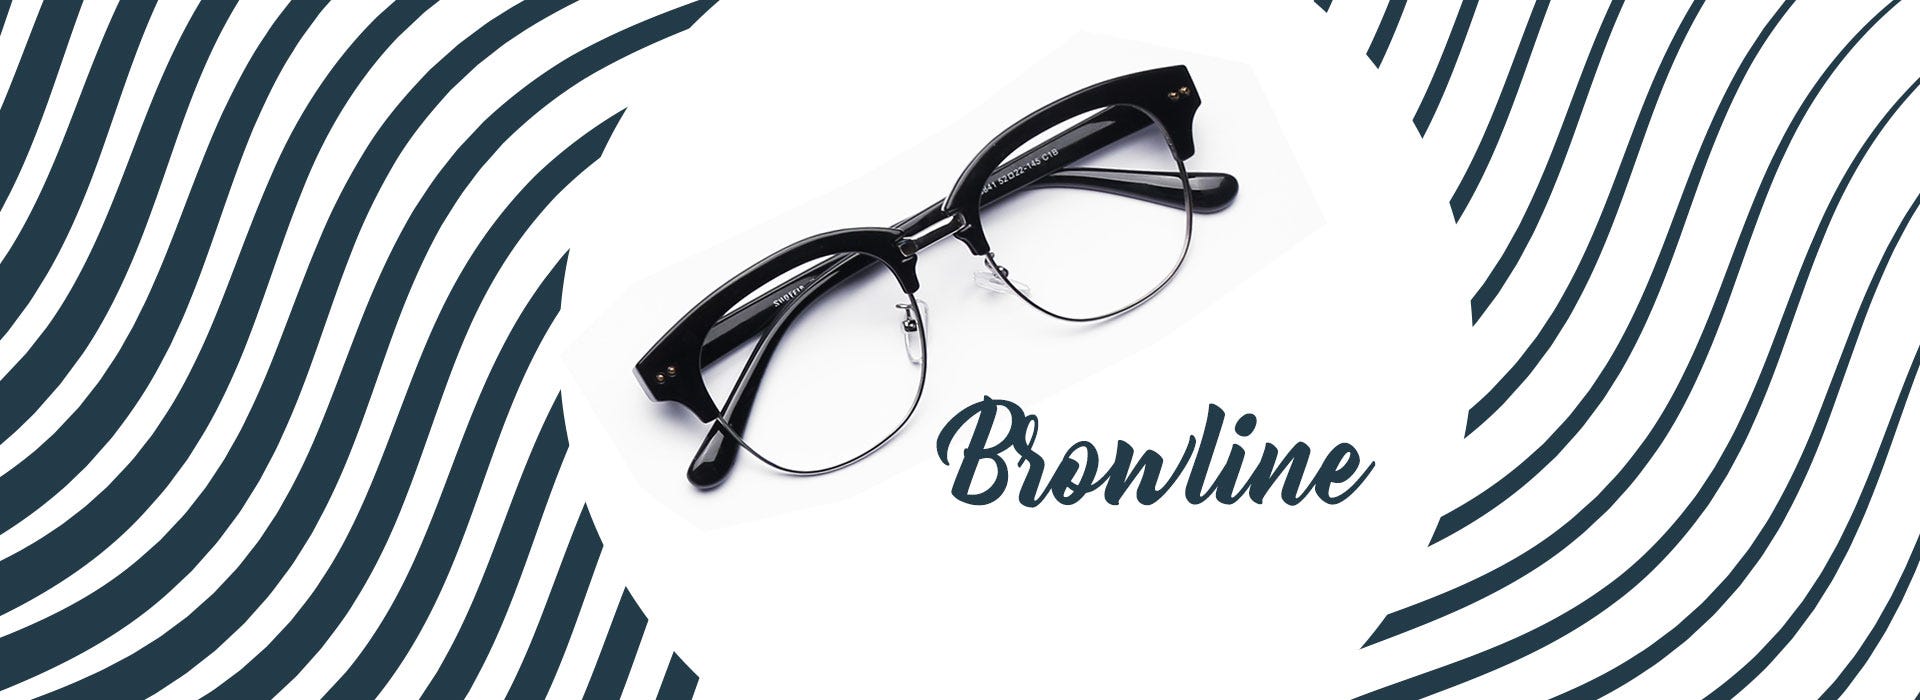 Buy Brownline Eyeglasses at Goggles4U